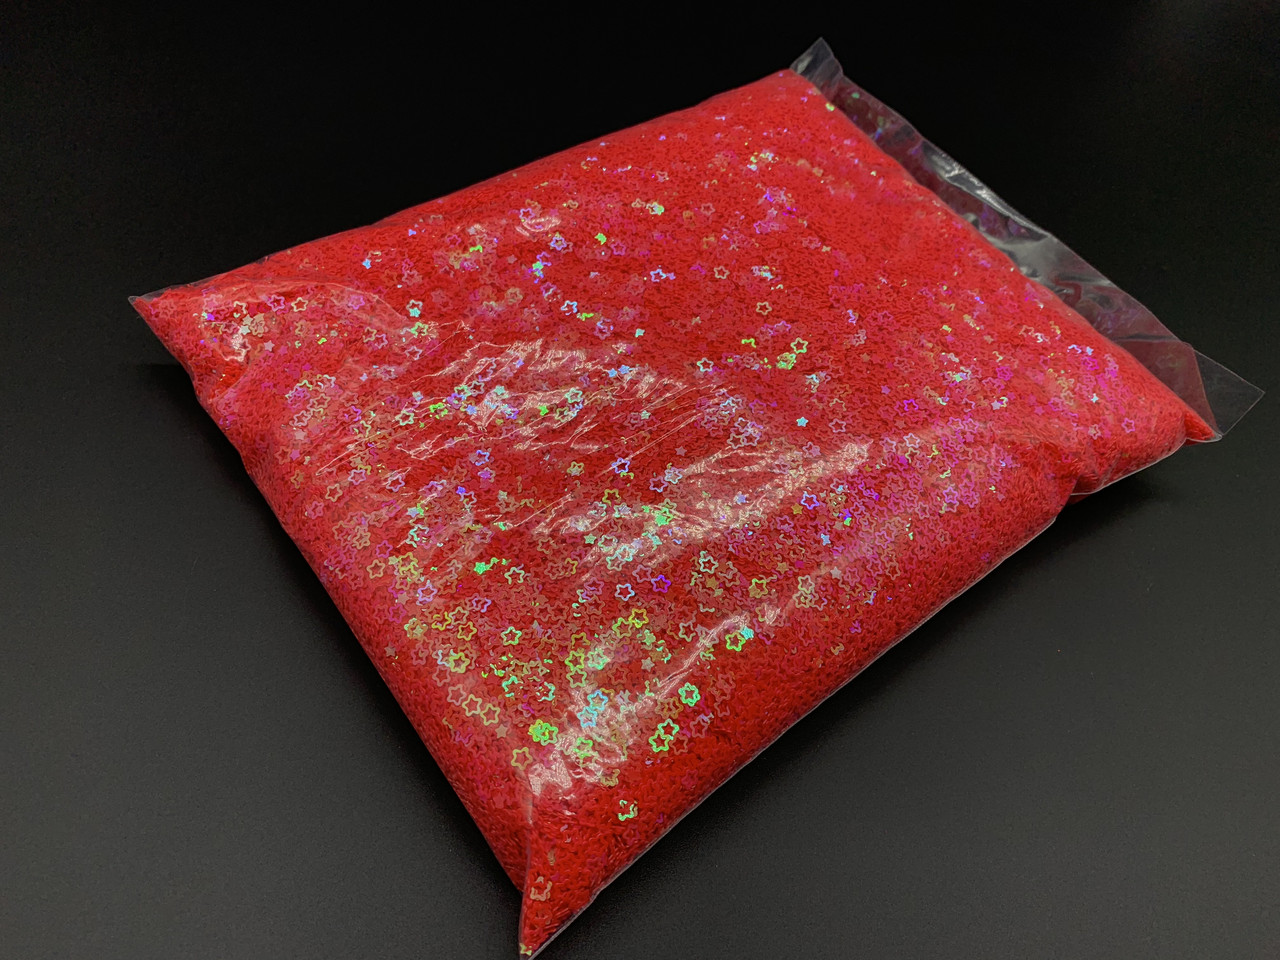 Гліттер червоний для декупажу та скрапбукінгу в упаковці 1кг зірка з ефектом хамелеон